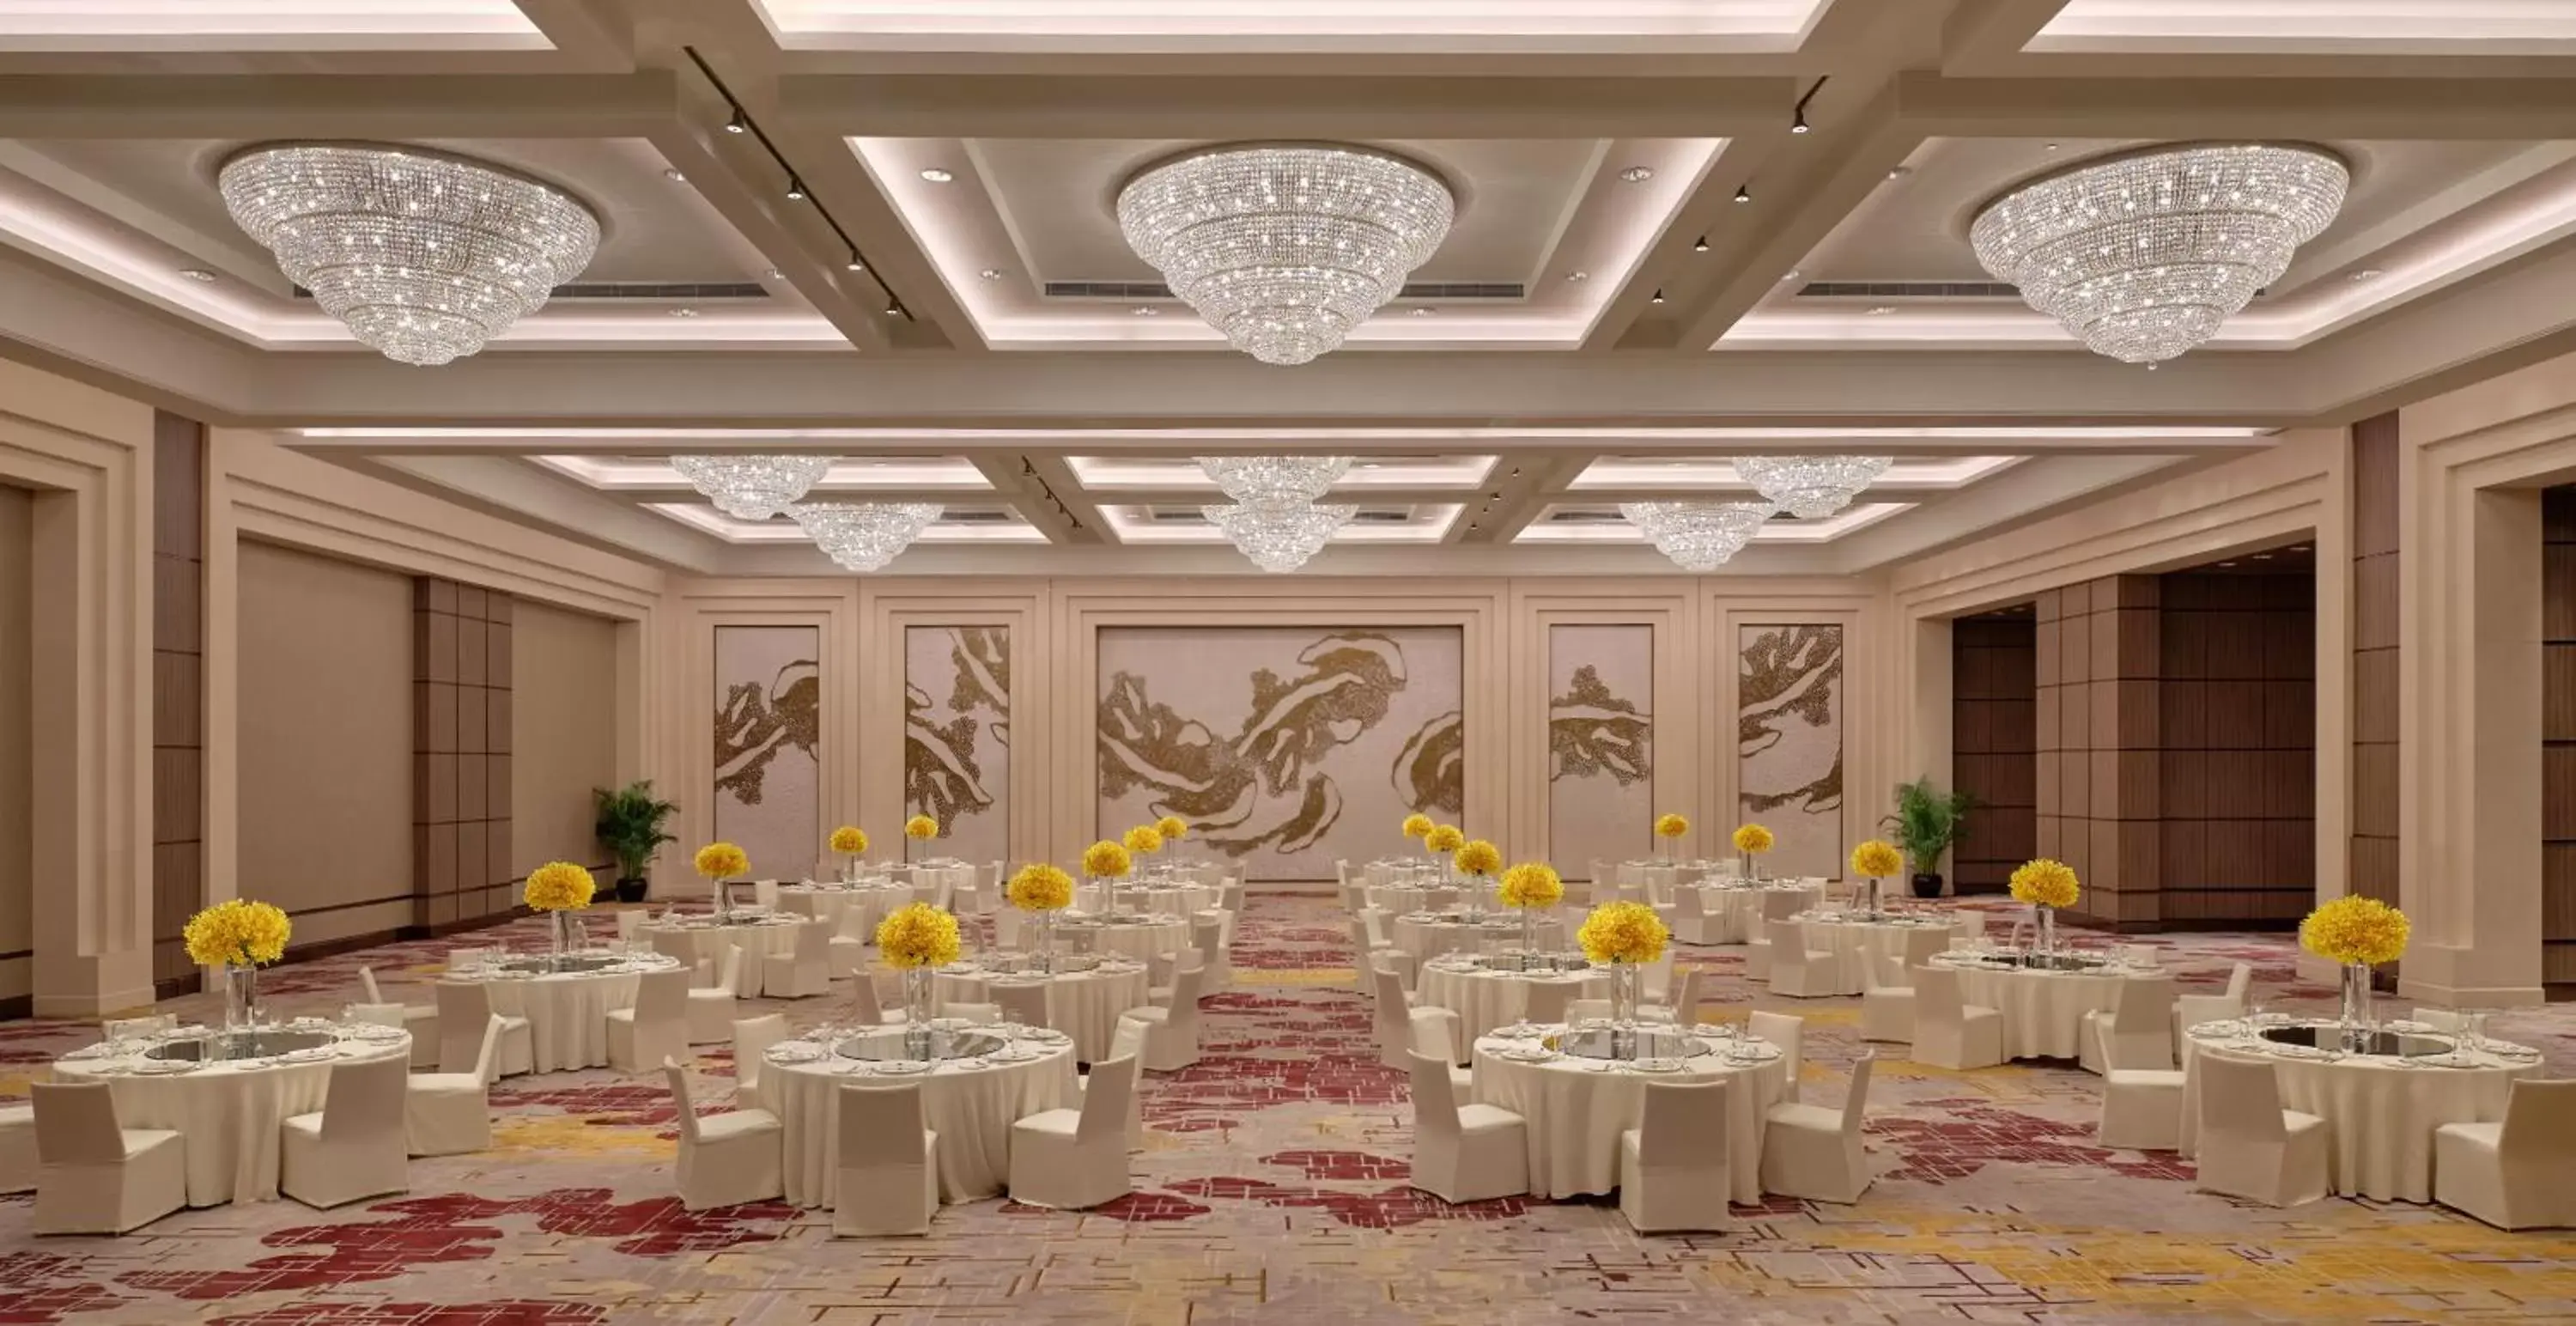 Meeting/conference room, Banquet Facilities in Grand Hyatt Beijing